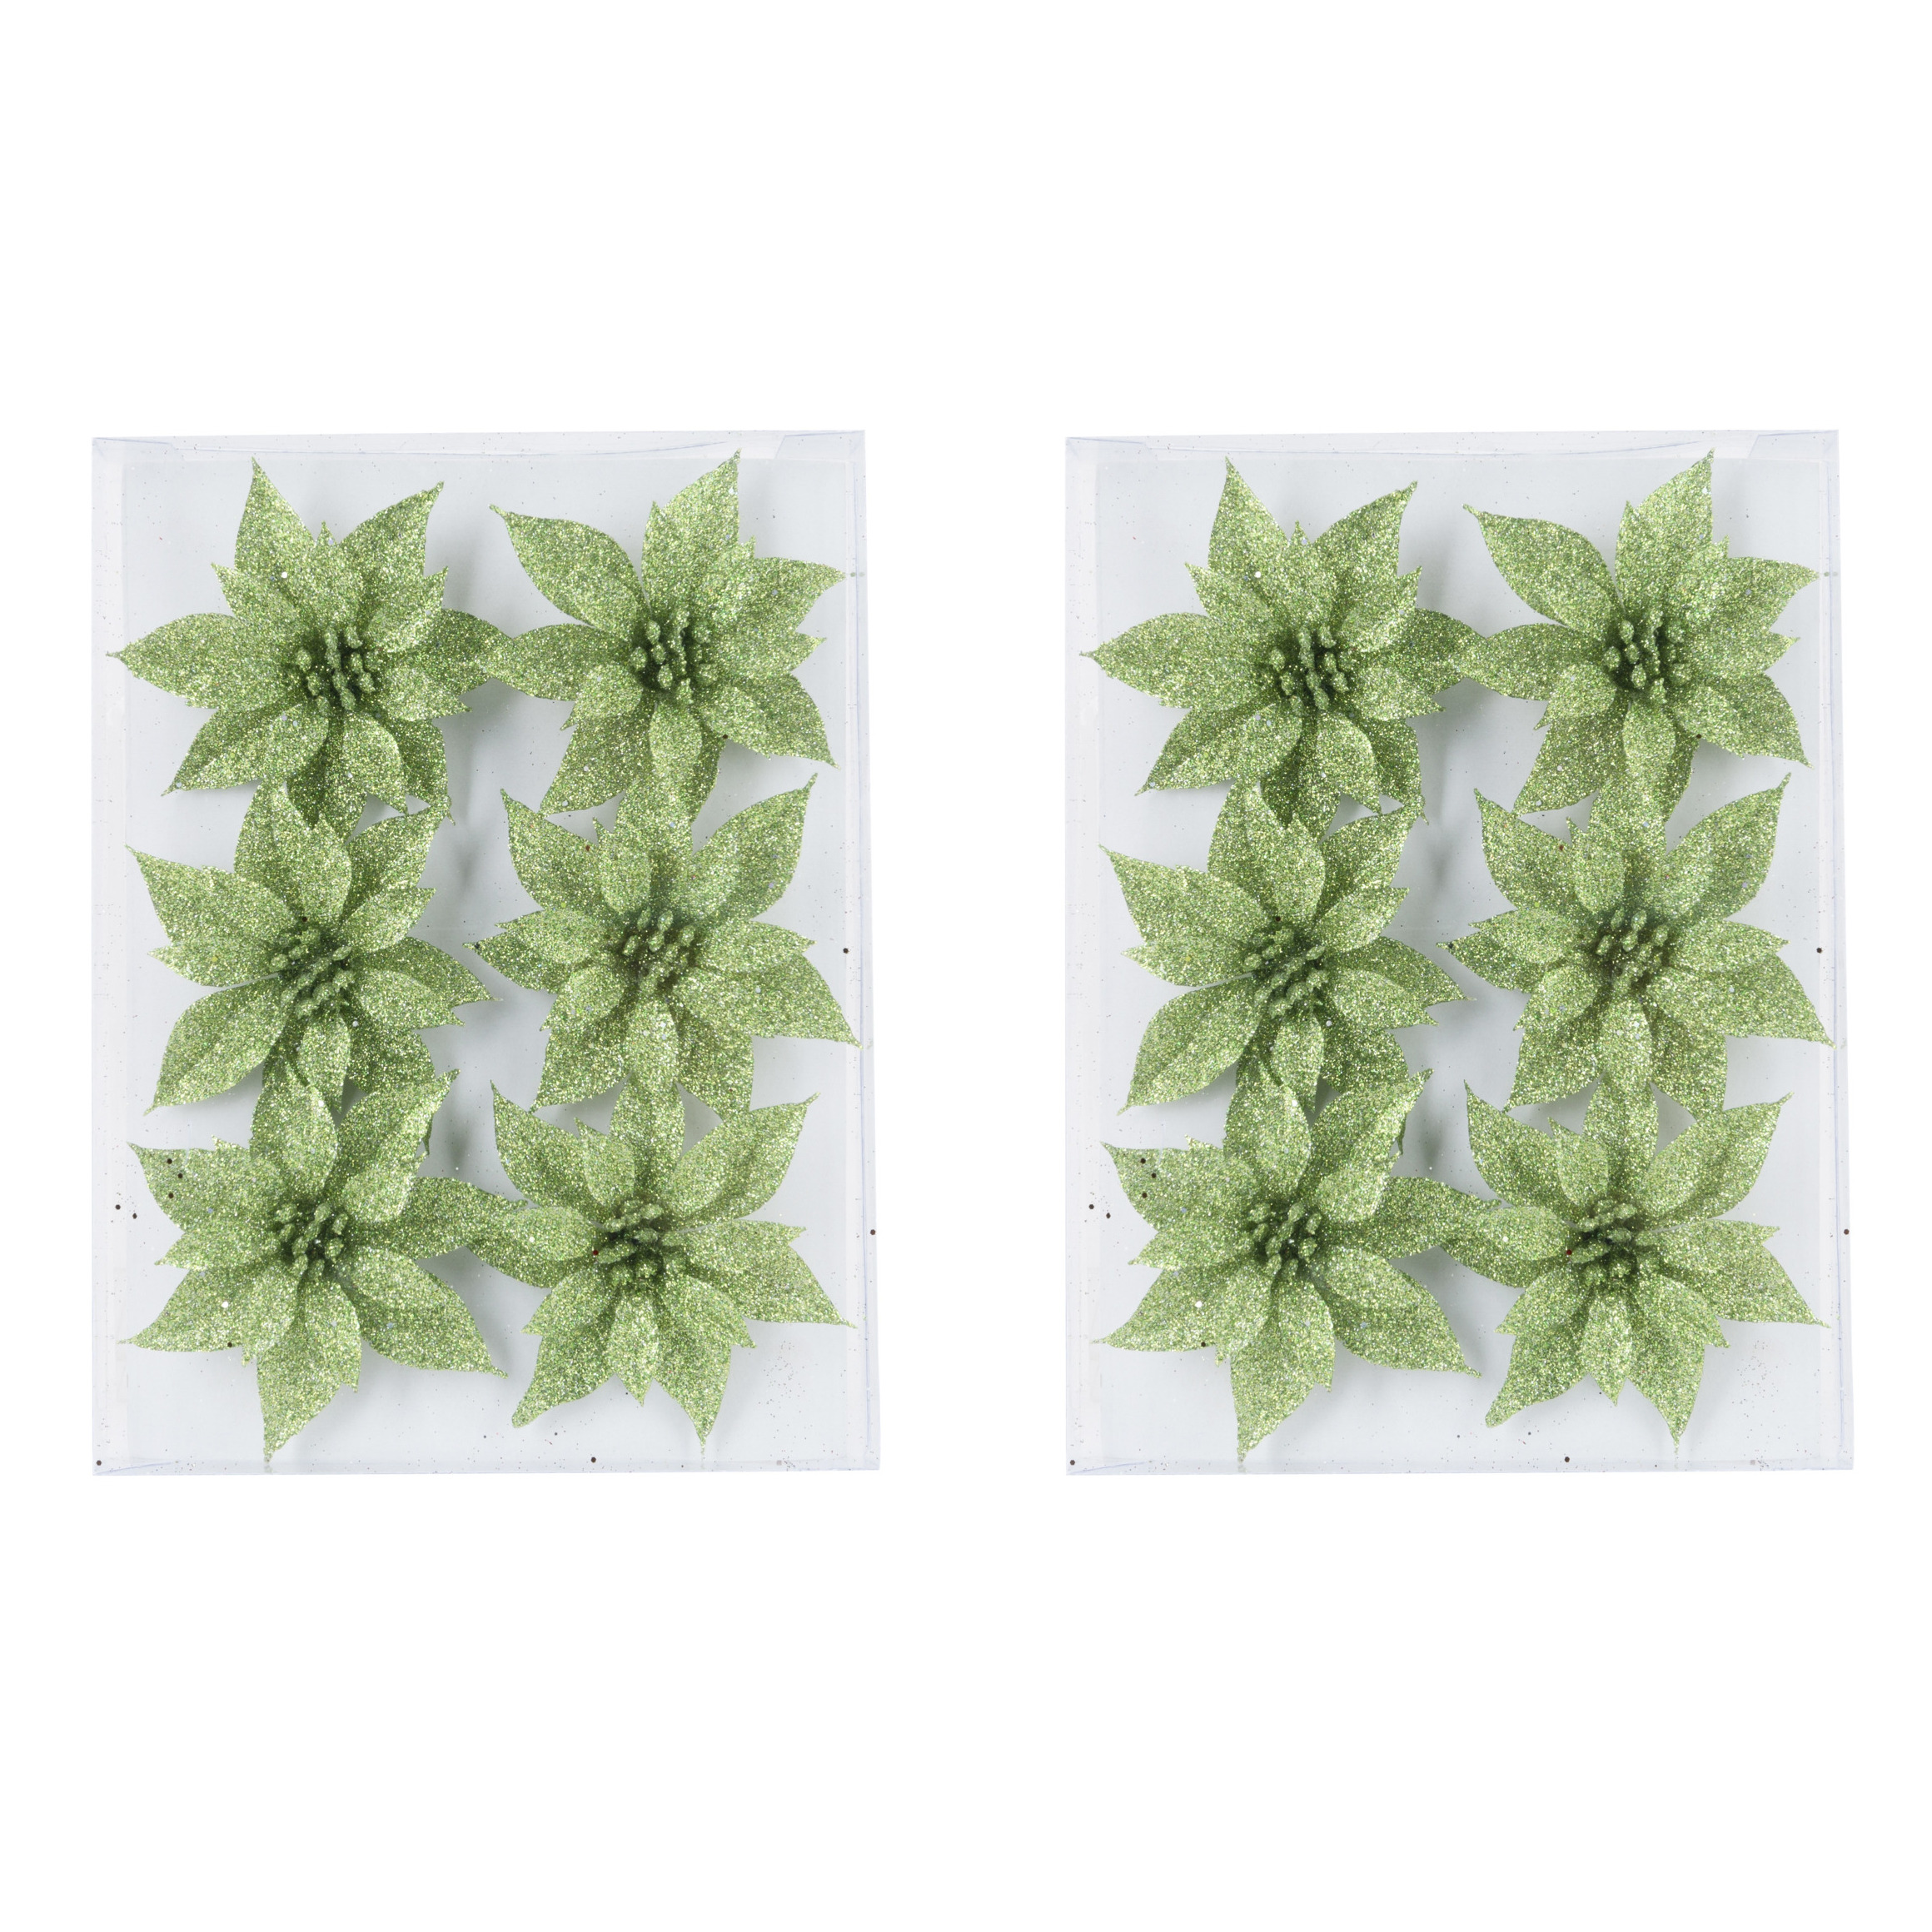 24x stuks decoratie bloemen rozen groen glitter op ijzerdraad 8 cm